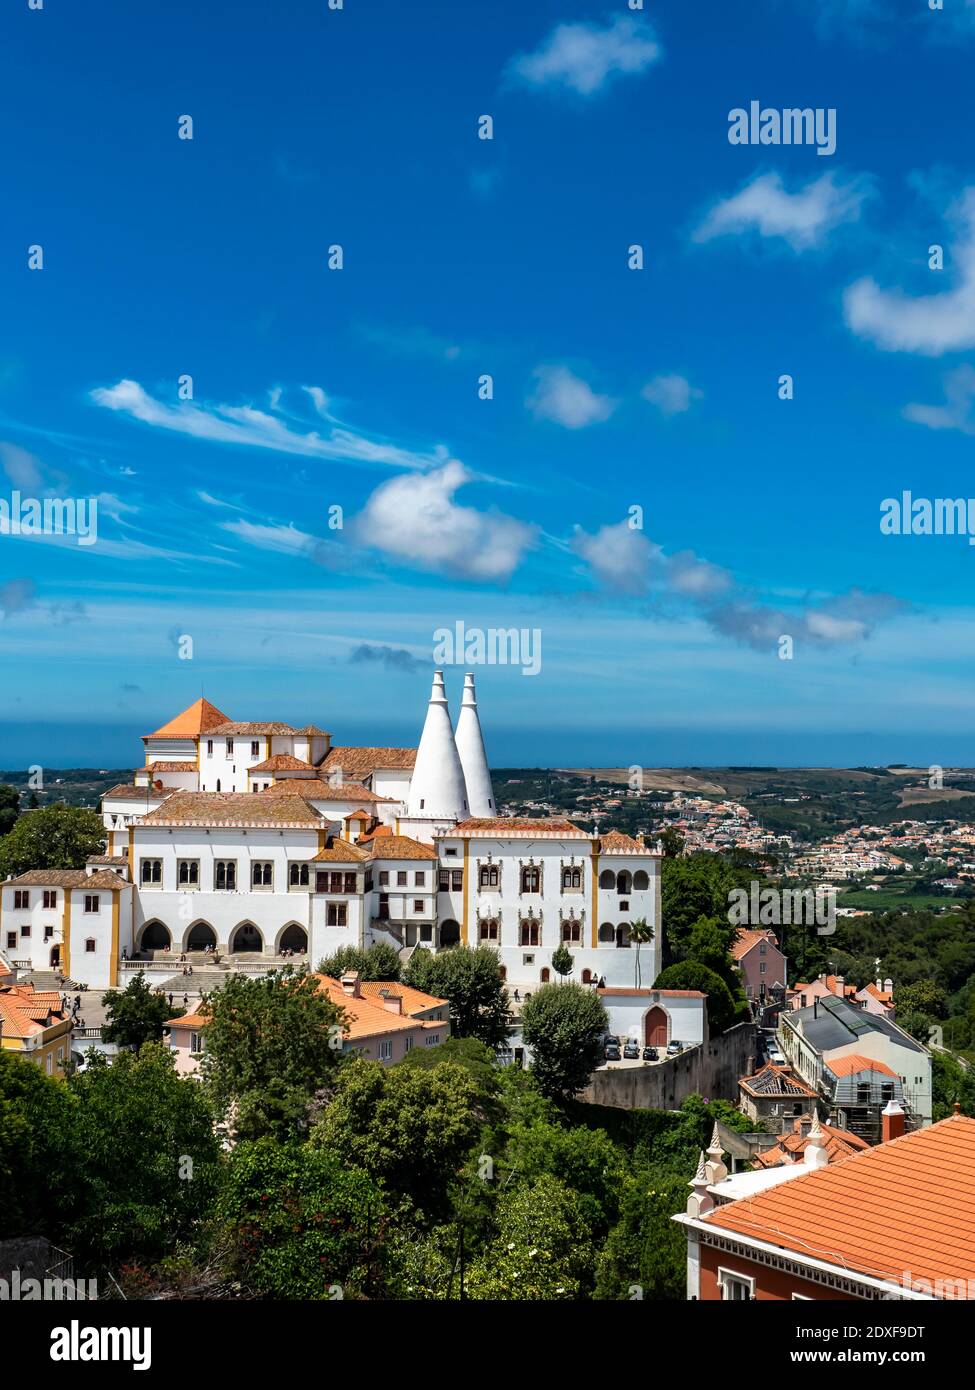 Portugal, quartier de Lisbonne, Sintra, ciel bleu au-dessus du Palais national de Sintra en été Banque D'Images